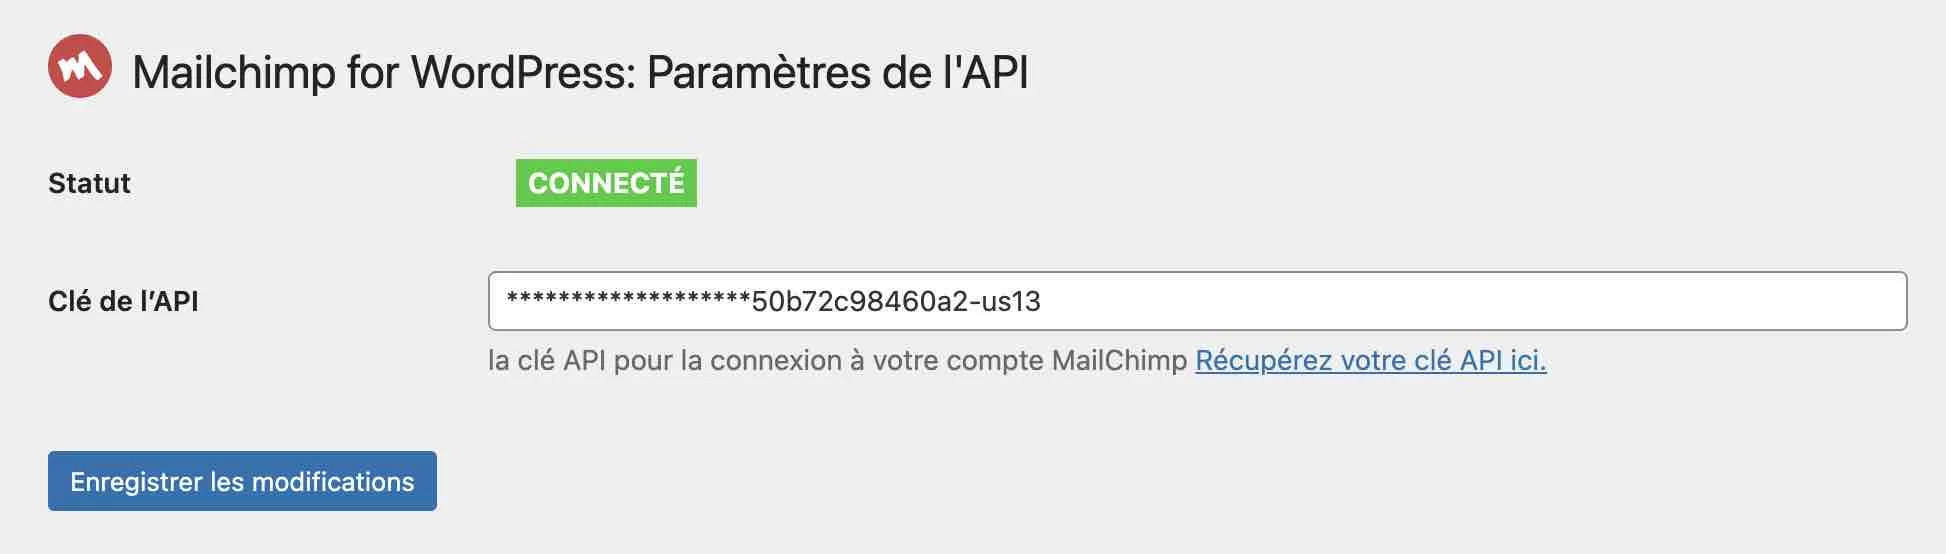 Connexion d'une clé API à Mailchimp for WordPress.